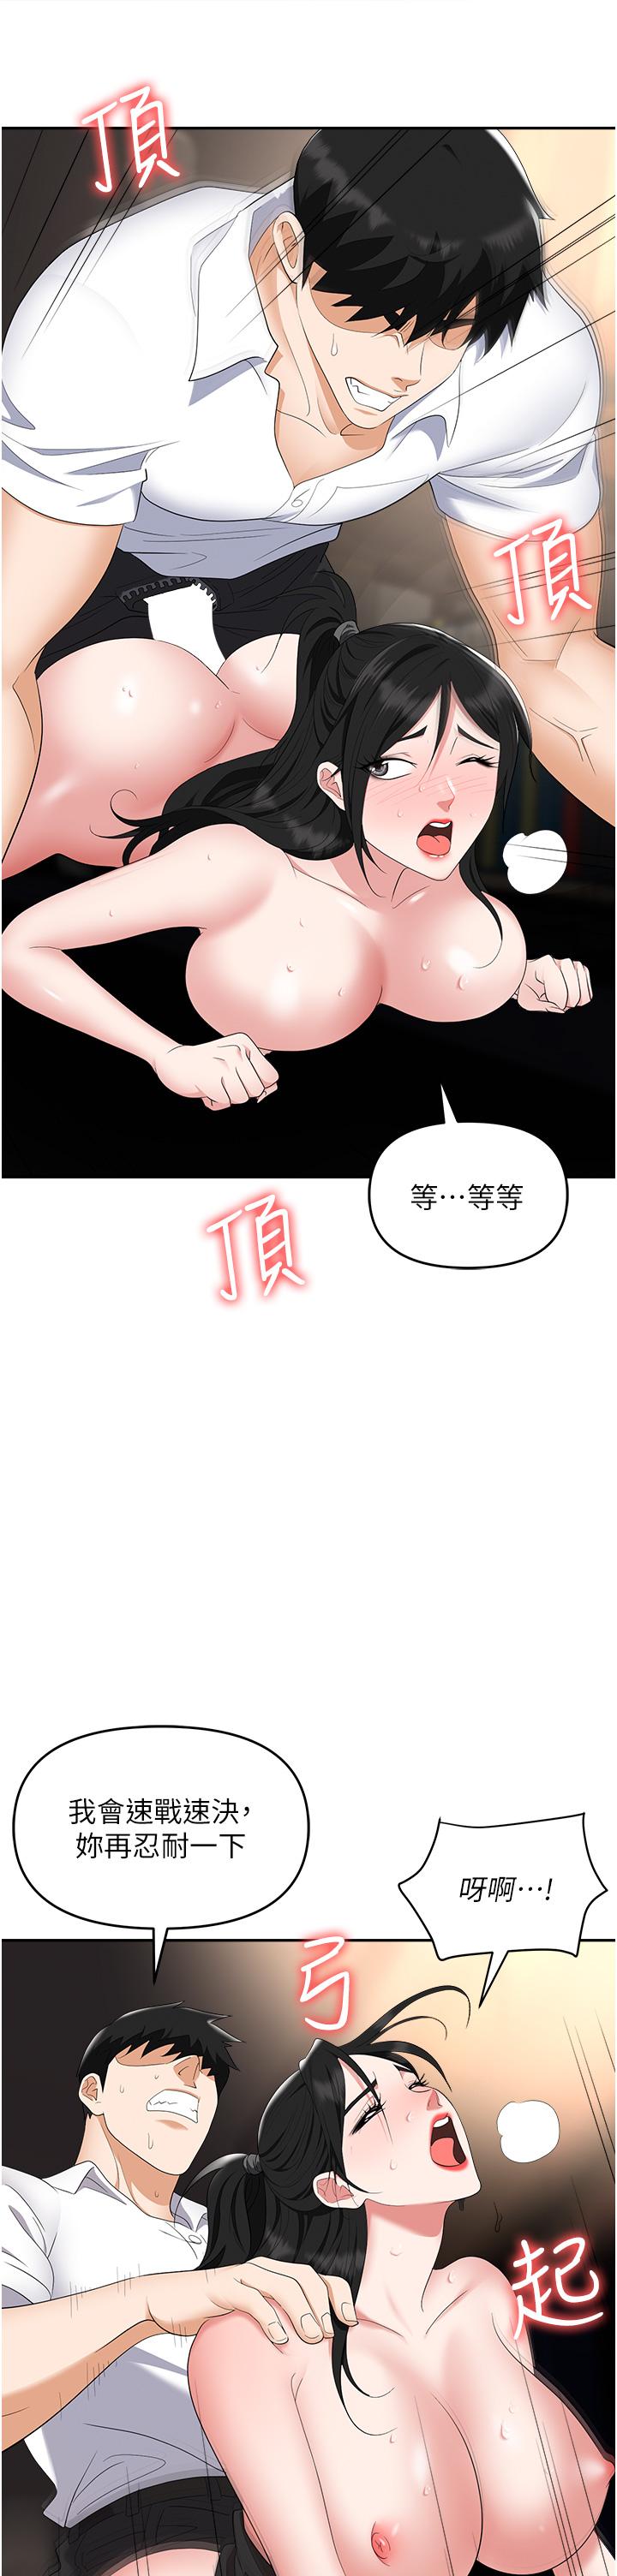 韩国污漫画 職場陷阱 第47话-精液泛滥的女大生鲍鱼 44